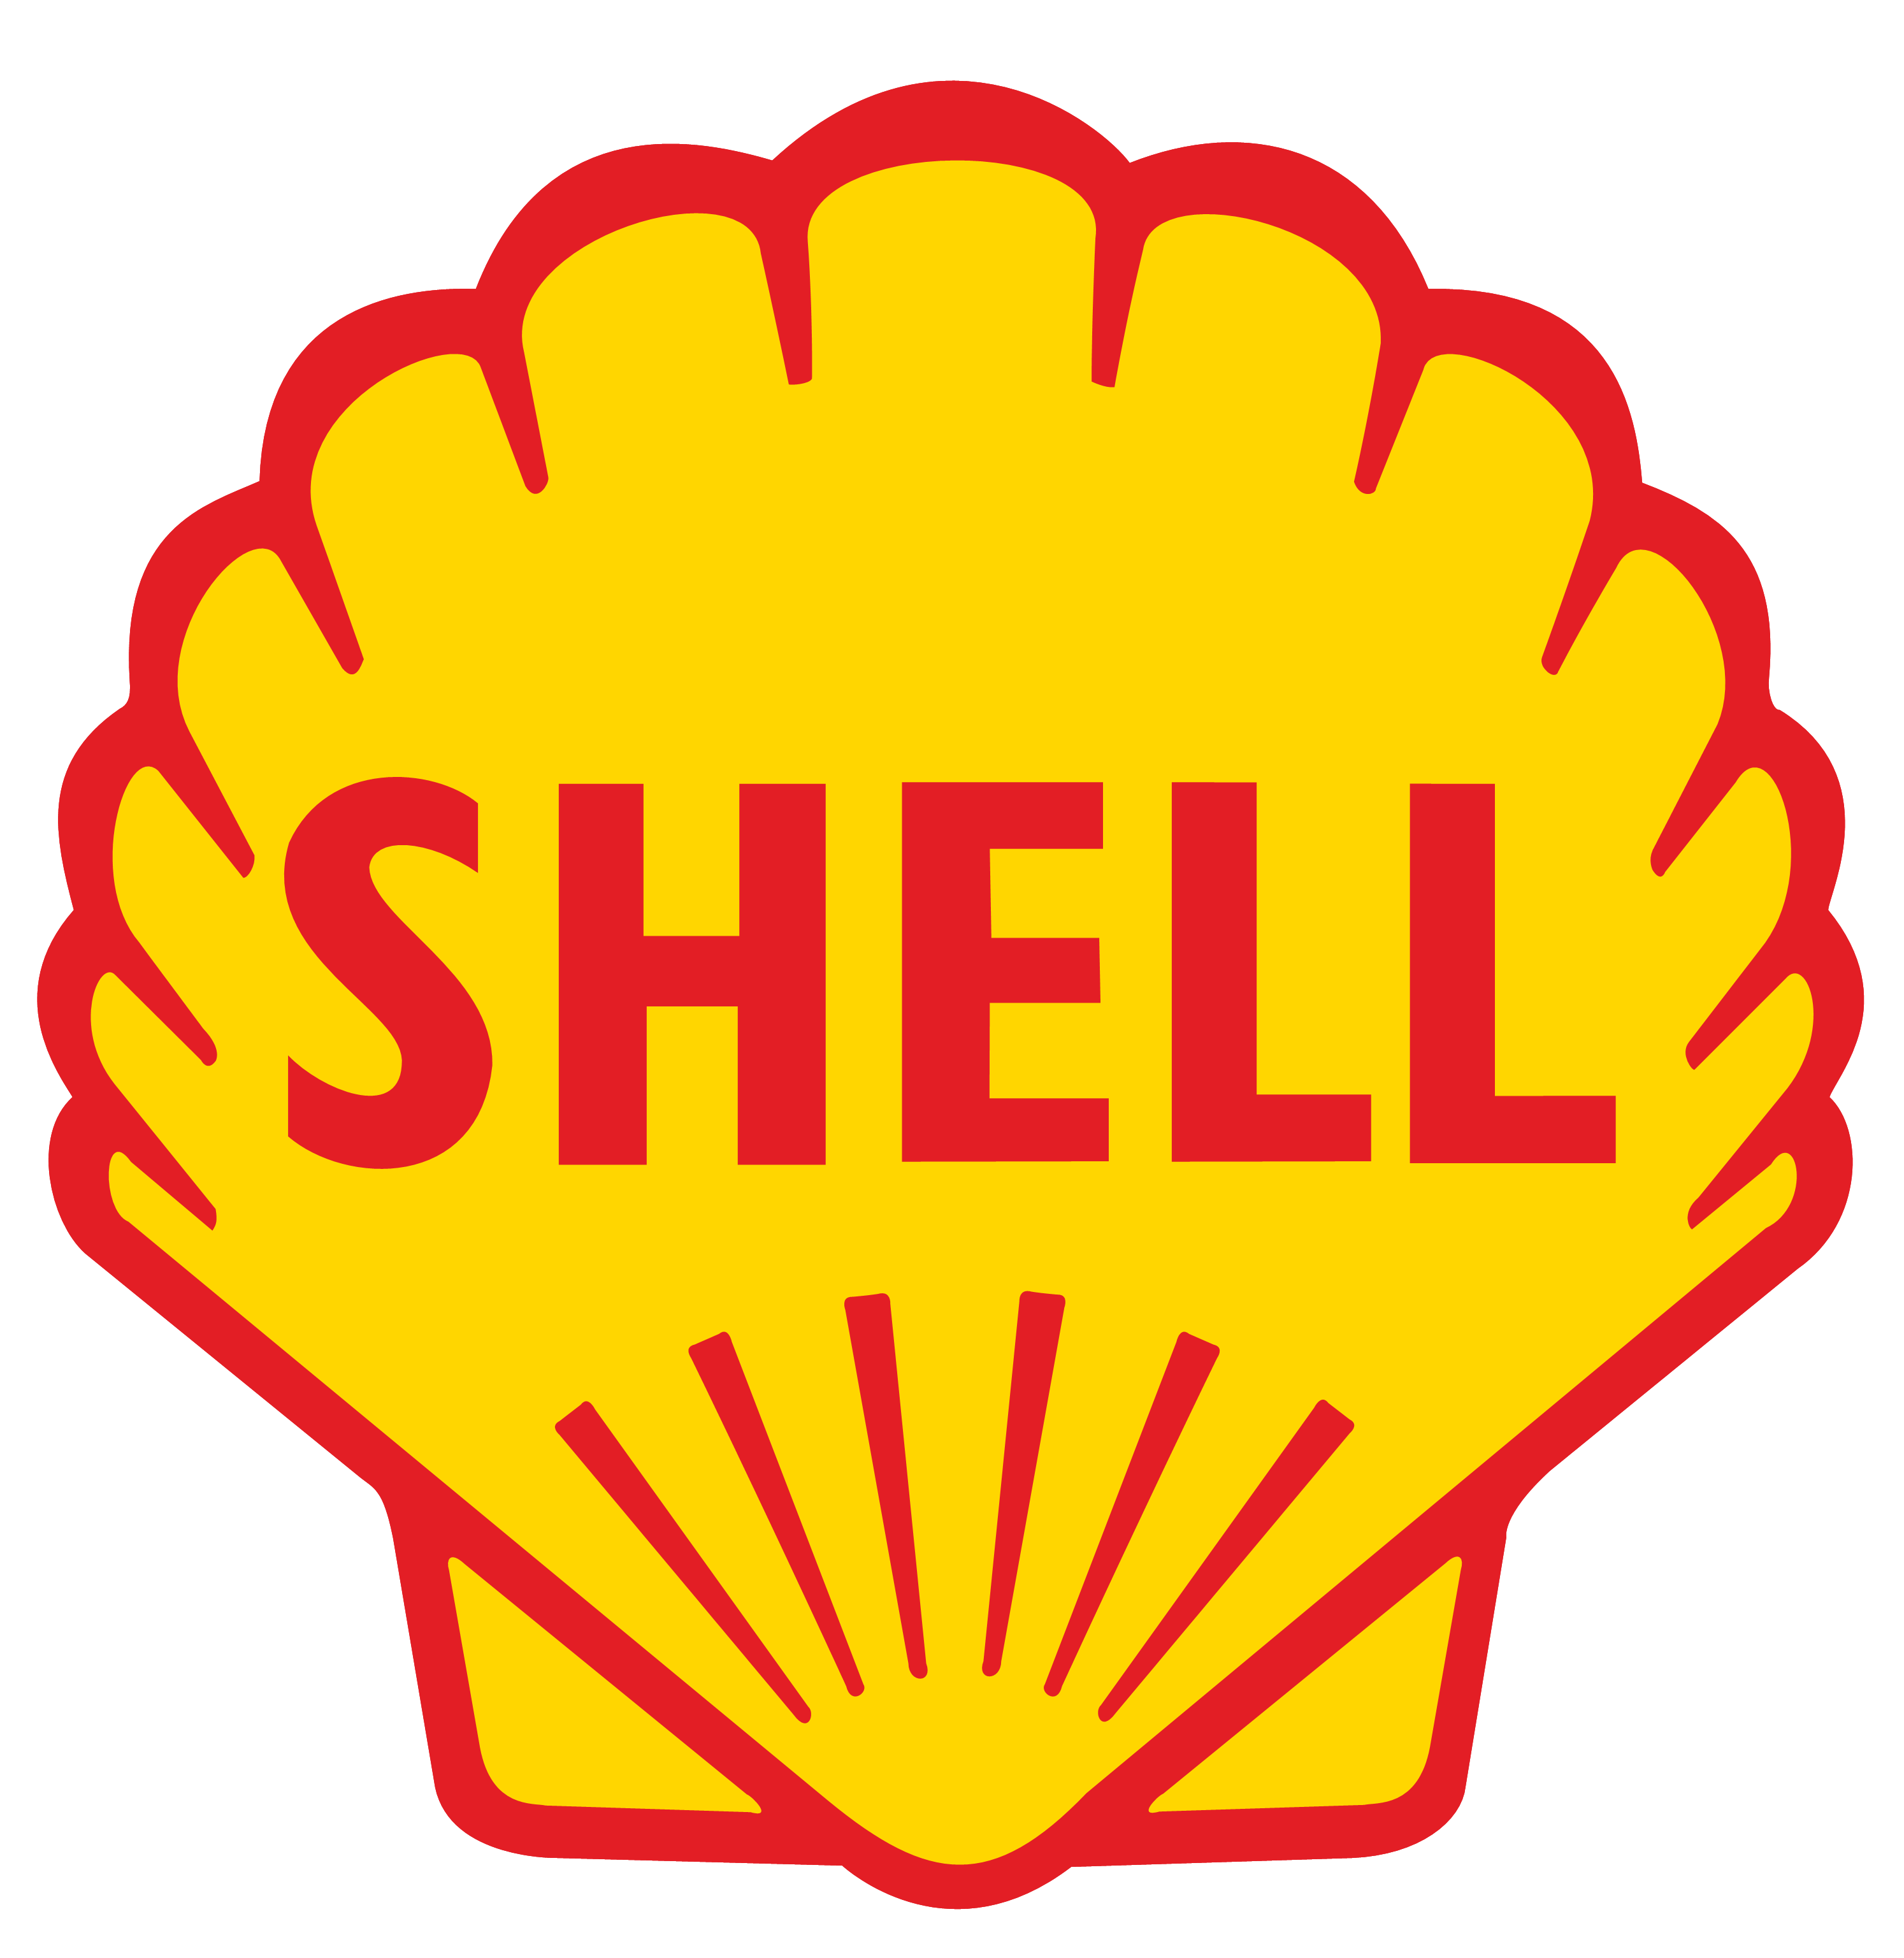 snail shell spiral